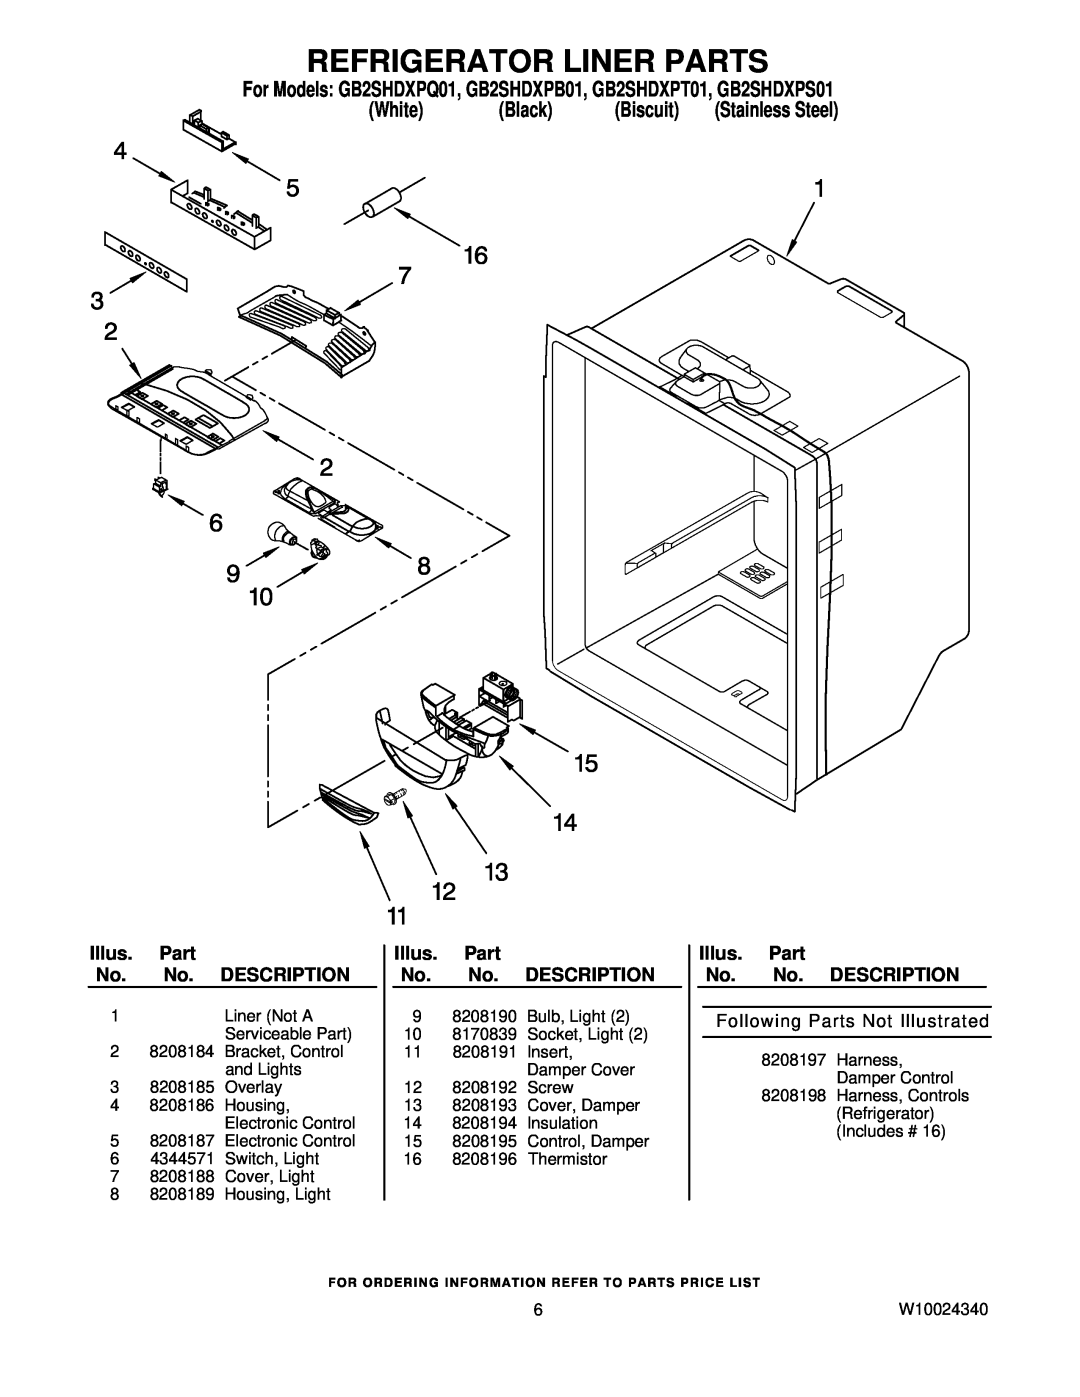 Whirlpool manual Refrigerator Liner Parts, For Models GB2SHDXPQ01, GB2SHDXPB01, GB2SHDXPT01, GB2SHDXPS01, White, Black 